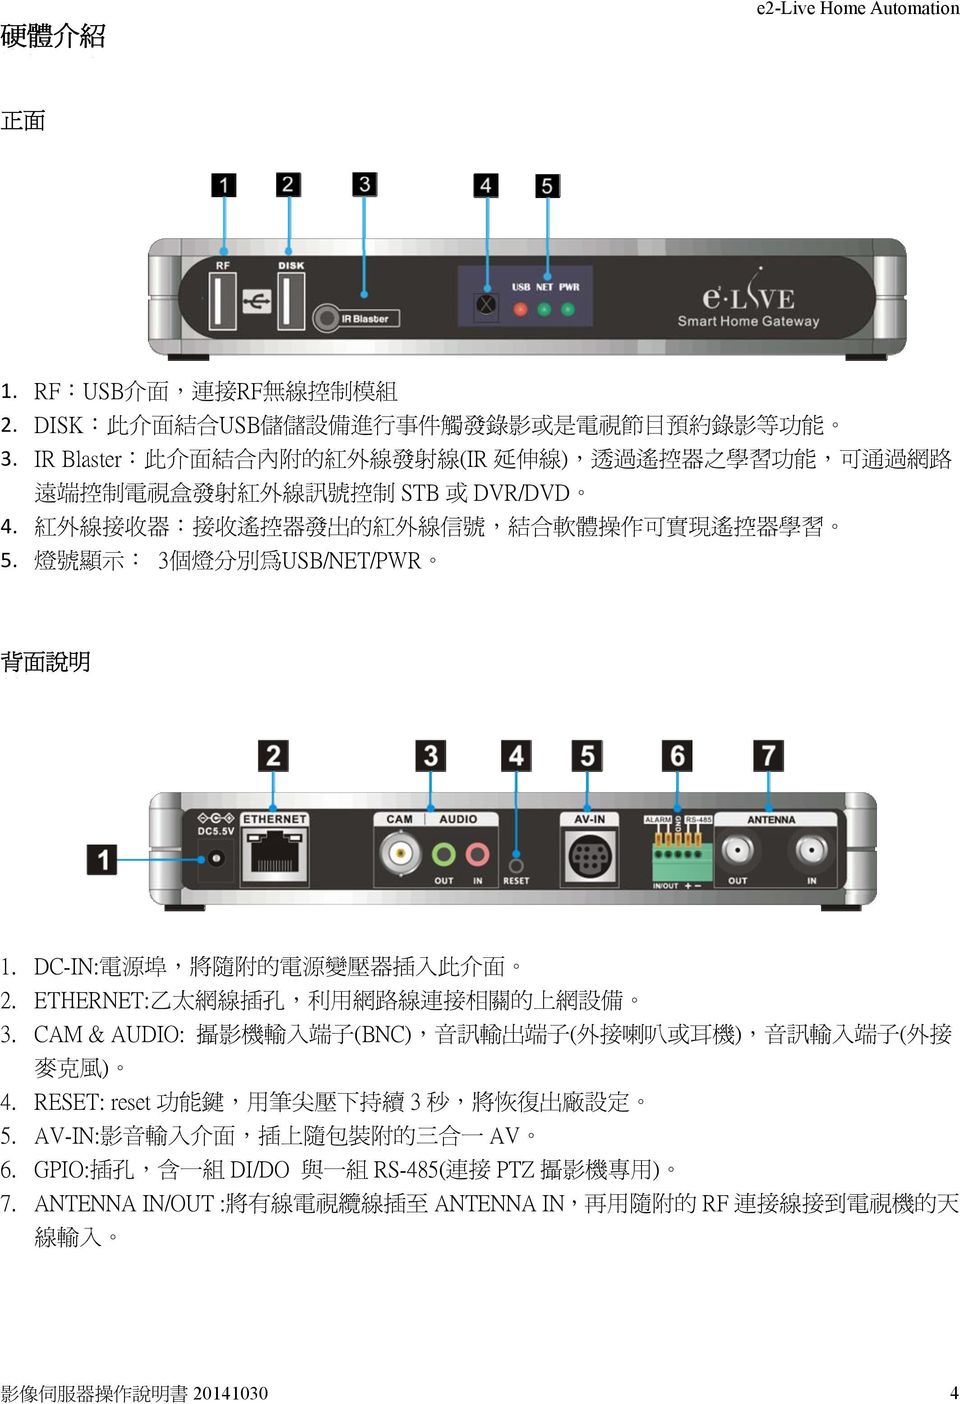 紅 外 線 接 收 器 : 接 收 遙 控 器 發 出 的 紅 外 線 信 號, 結 合 軟 體 操 作 可 實 現 遙 控 器 學 習 5. 燈 號 顯 示 : 3 個 燈 分 別 為 USB/NET/PWR 背 面 說 明 1. DC-IN: 電 源 埠, 將 隨 附 的 電 源 變 壓 器 插 入 此 介 面 2.